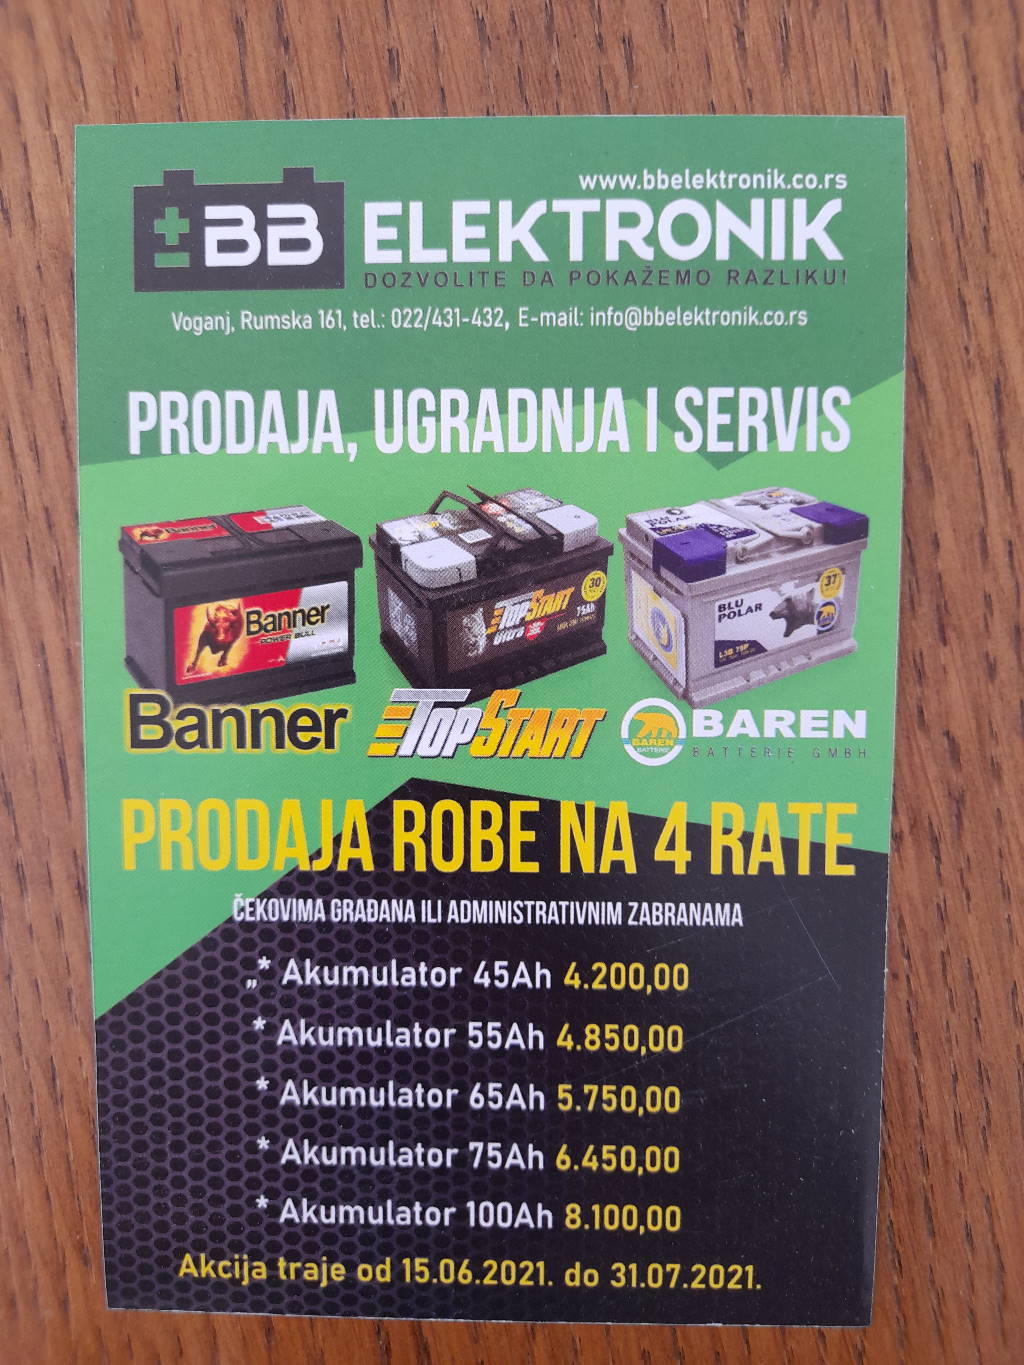 Podela i štampa flajera za BB elektronik u Novom Sadu i Beogradu!!!